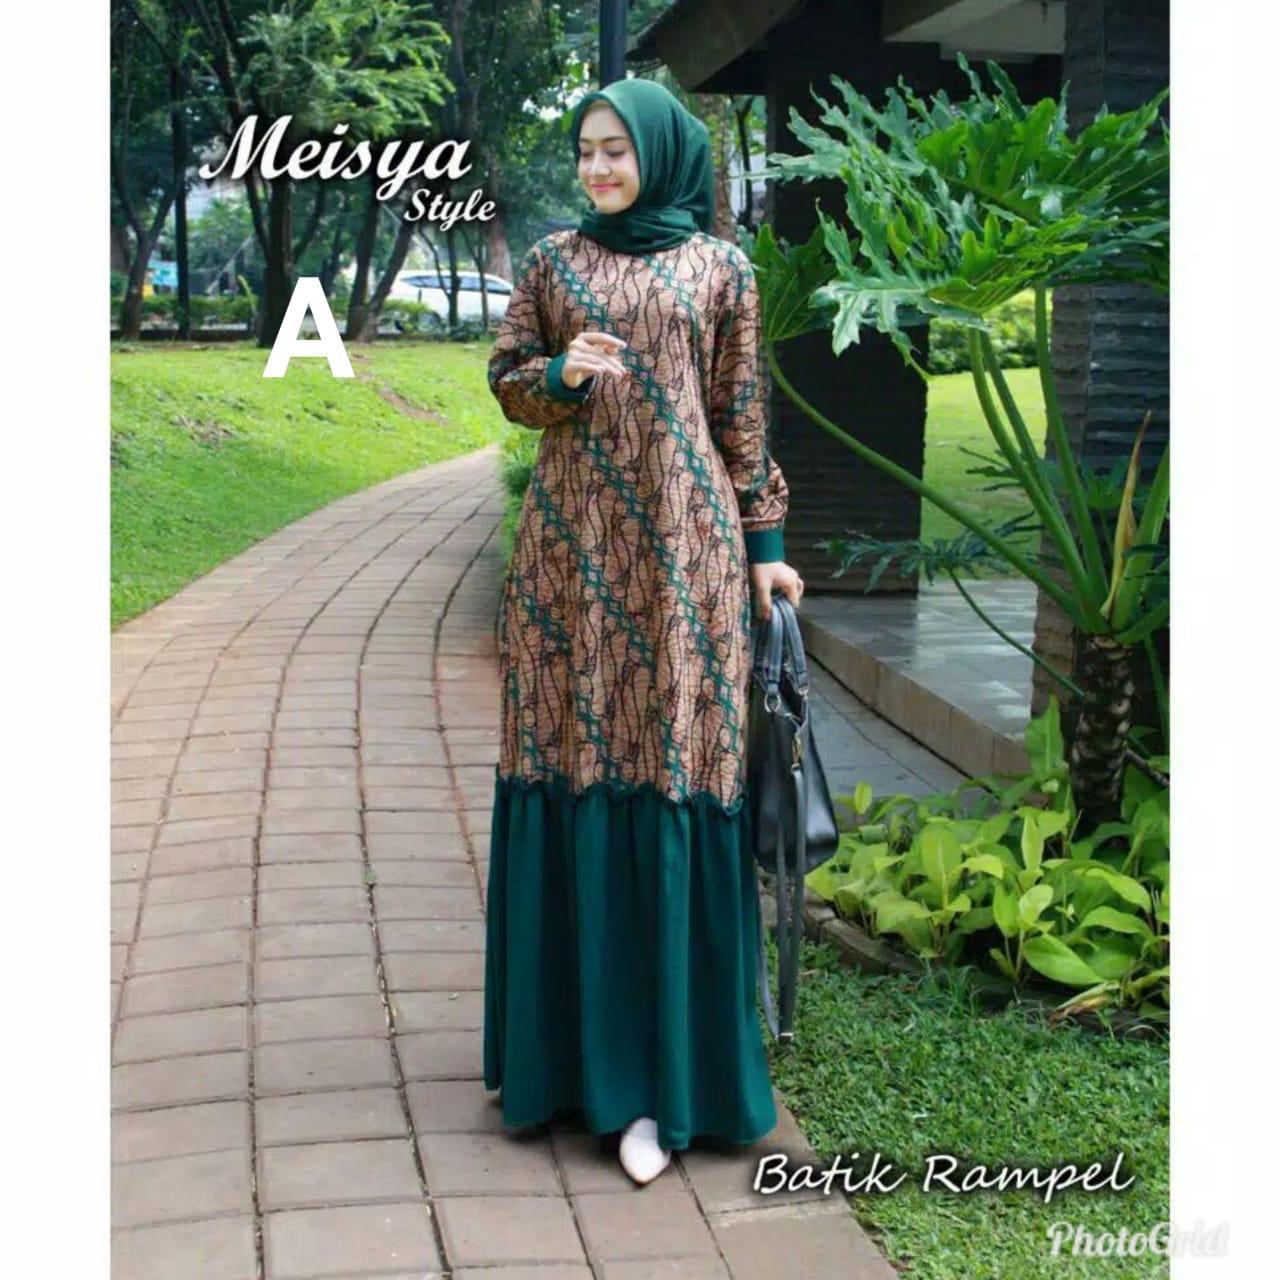 BAYAR DITEMPAT (COD) - DISKON 50% - Baju Batik Wanita / Batik Modern / Gamis Wanita Terbaru / Batik/ Baju Muslim Wanita Terbaru 2019 / Baju Batik Modern / Batik Kondangan / Batik Keluarga / Batik Pekalongan - Batik GAMIS MEISYA STYLE